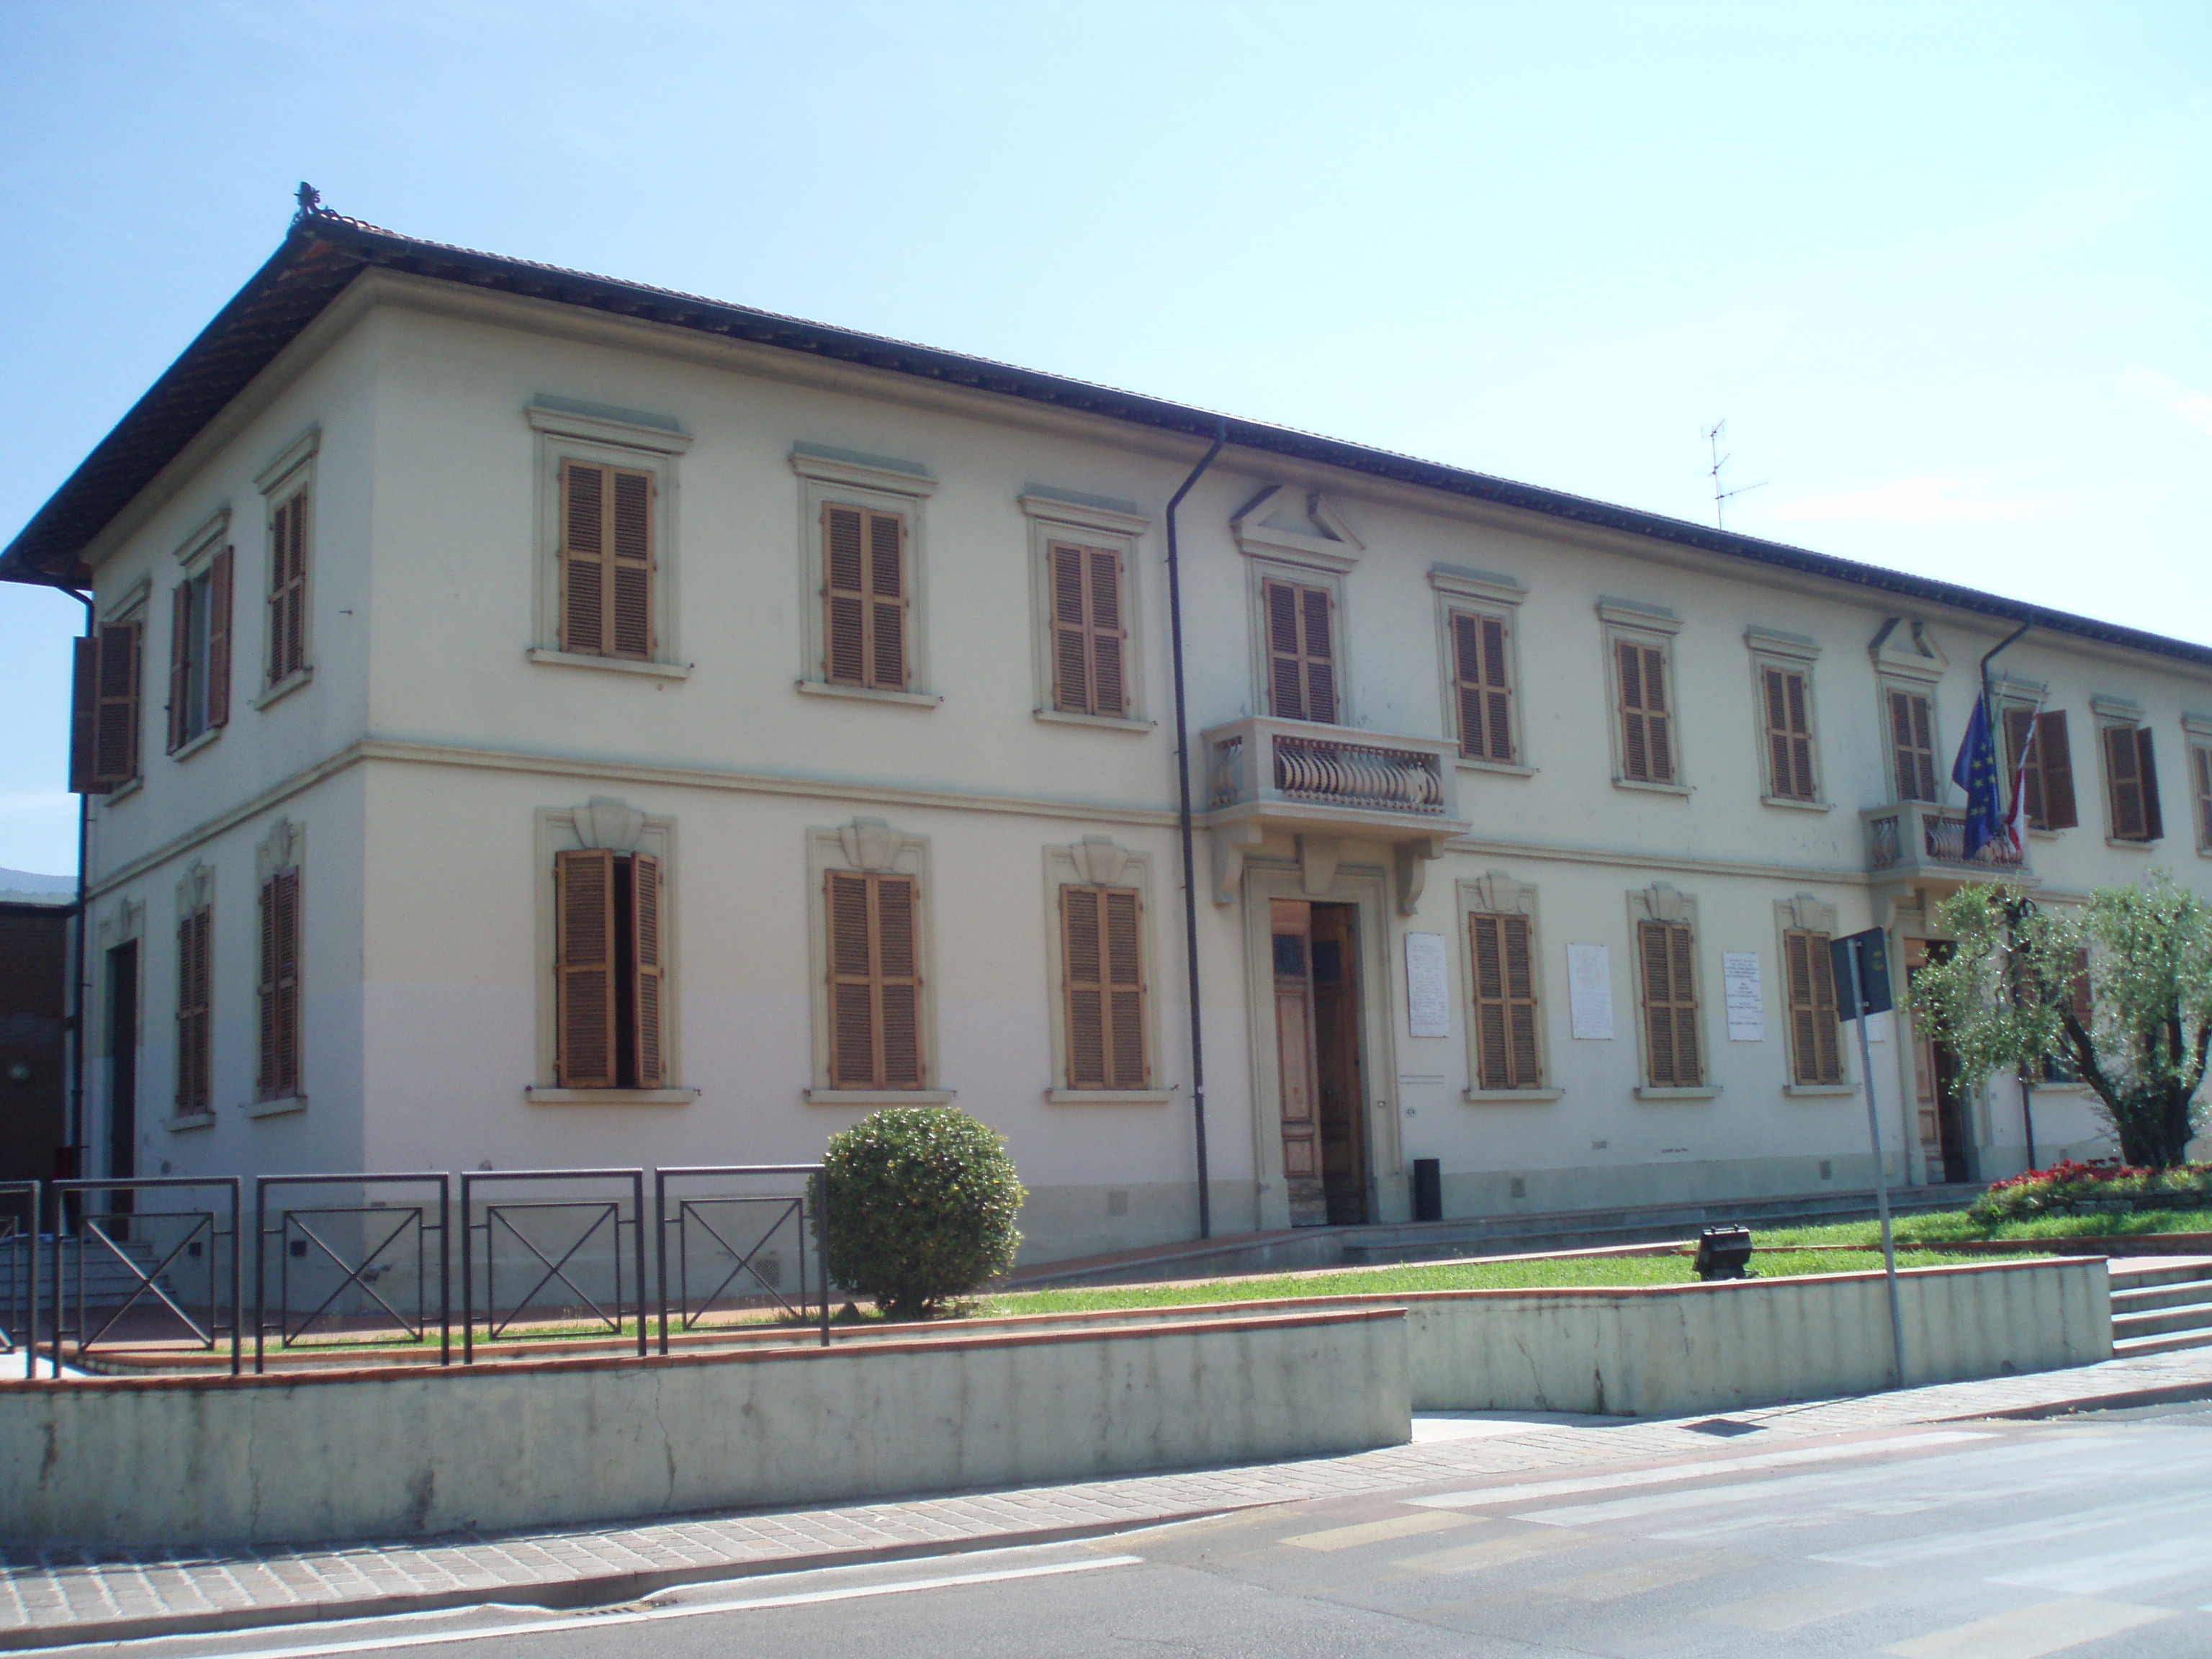 Palazzo comunale (municipio) - Montemurlo (PO)  (XIX, fine; XX, inizio)